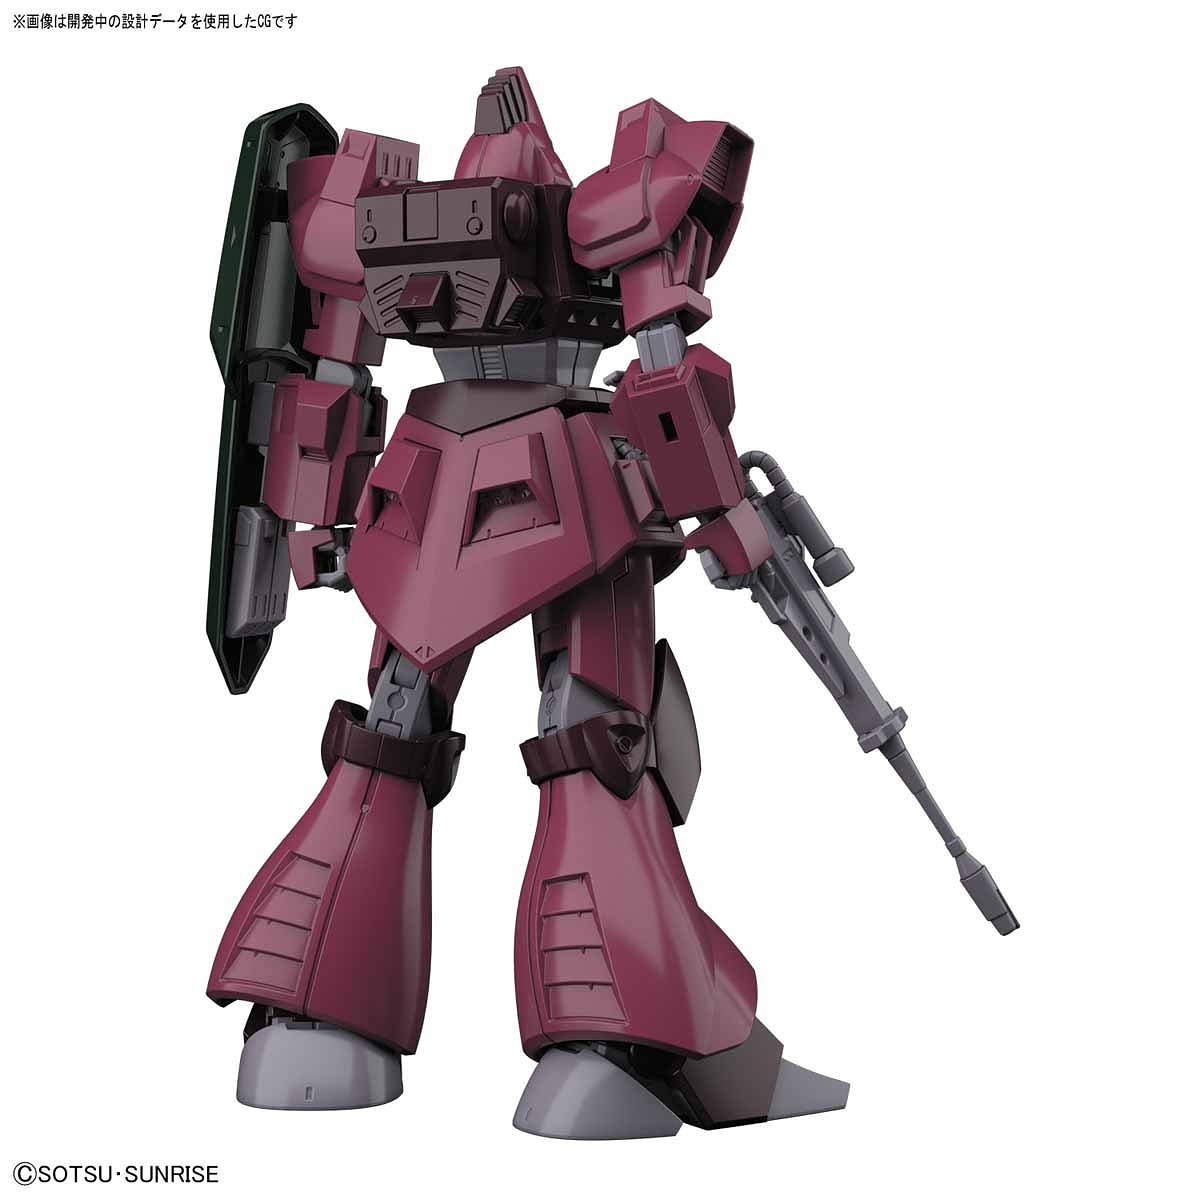 HG Gundam Galbaldy Beta 1/144 - gundam-store.dk